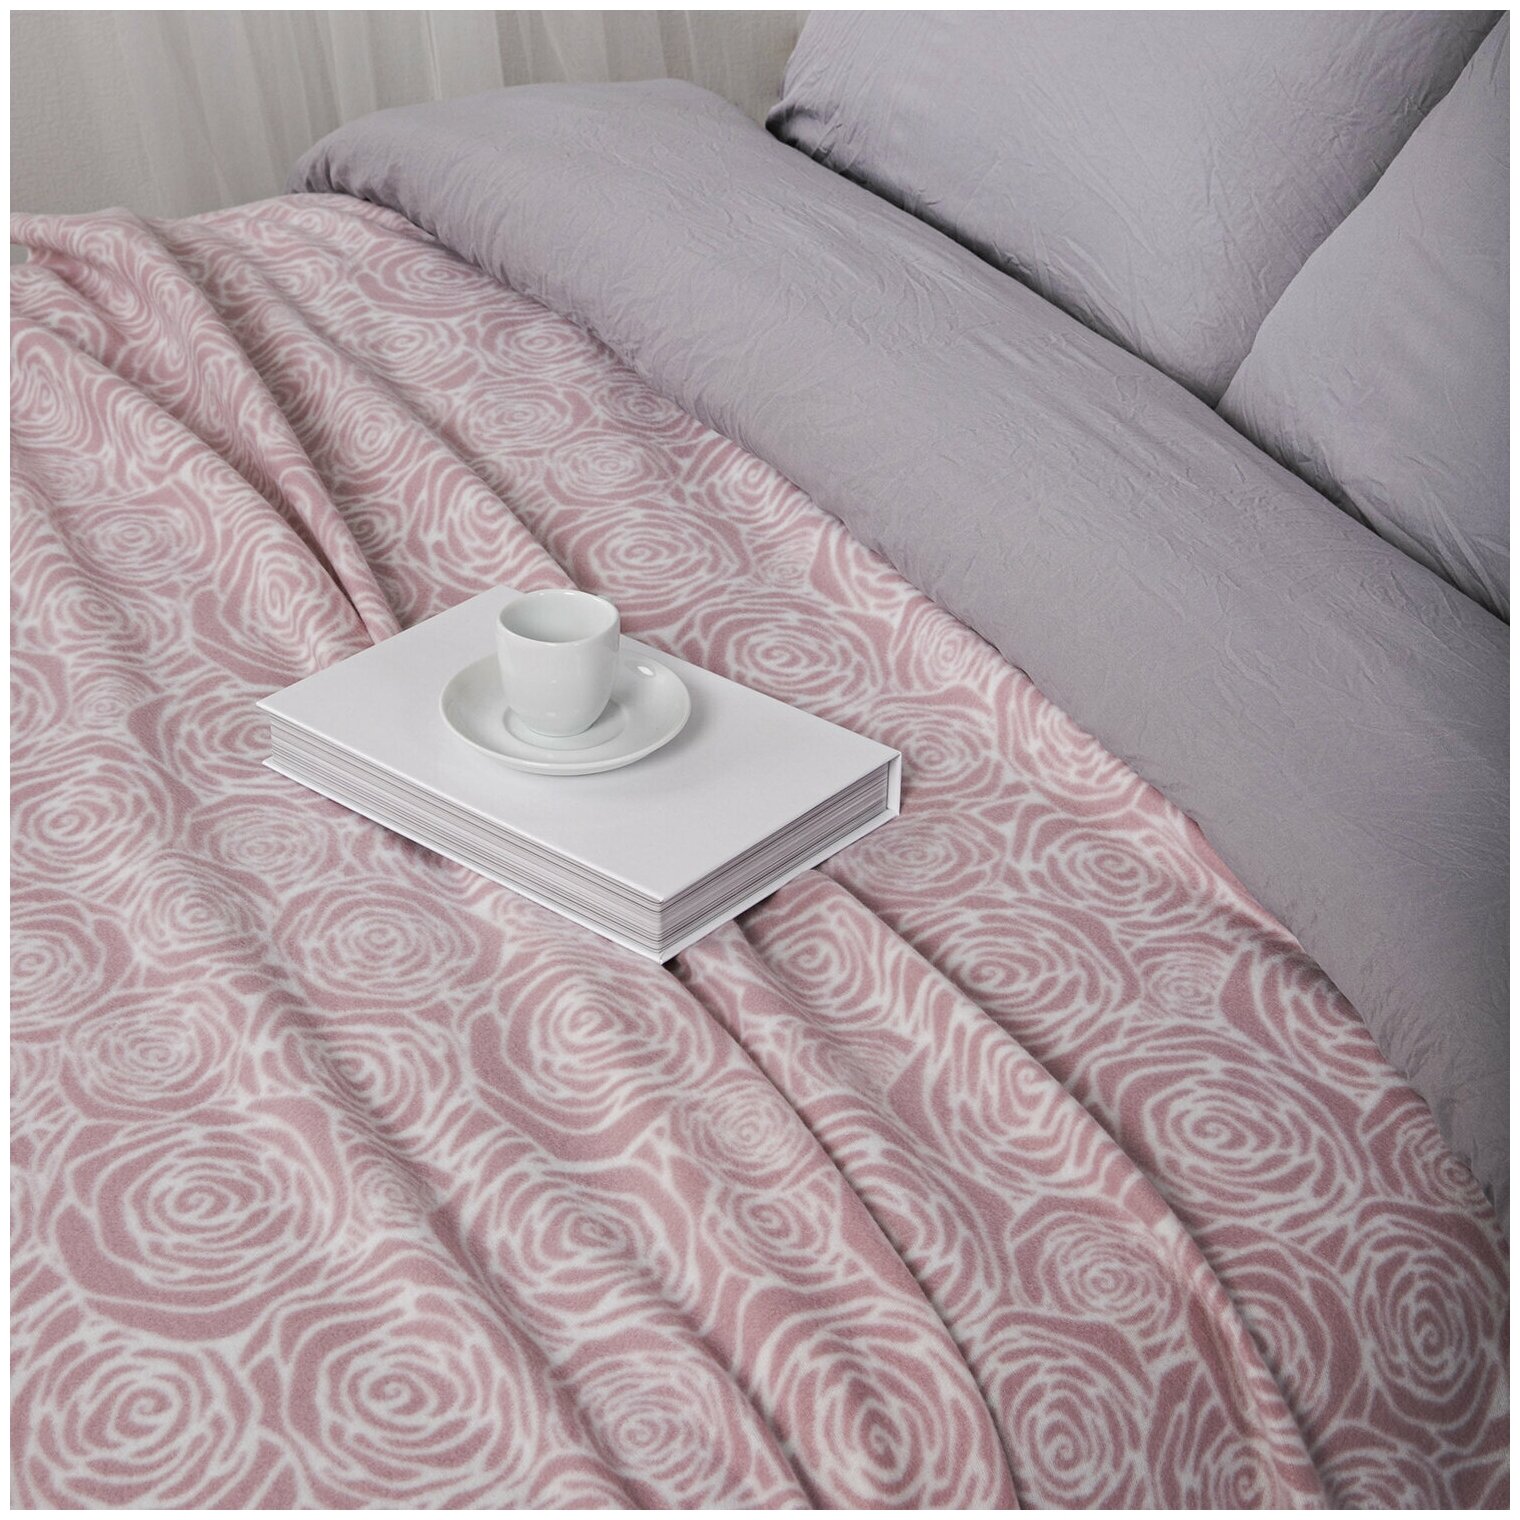 Плед флисовый на кровать, диван 130х170 "Роза" розовый